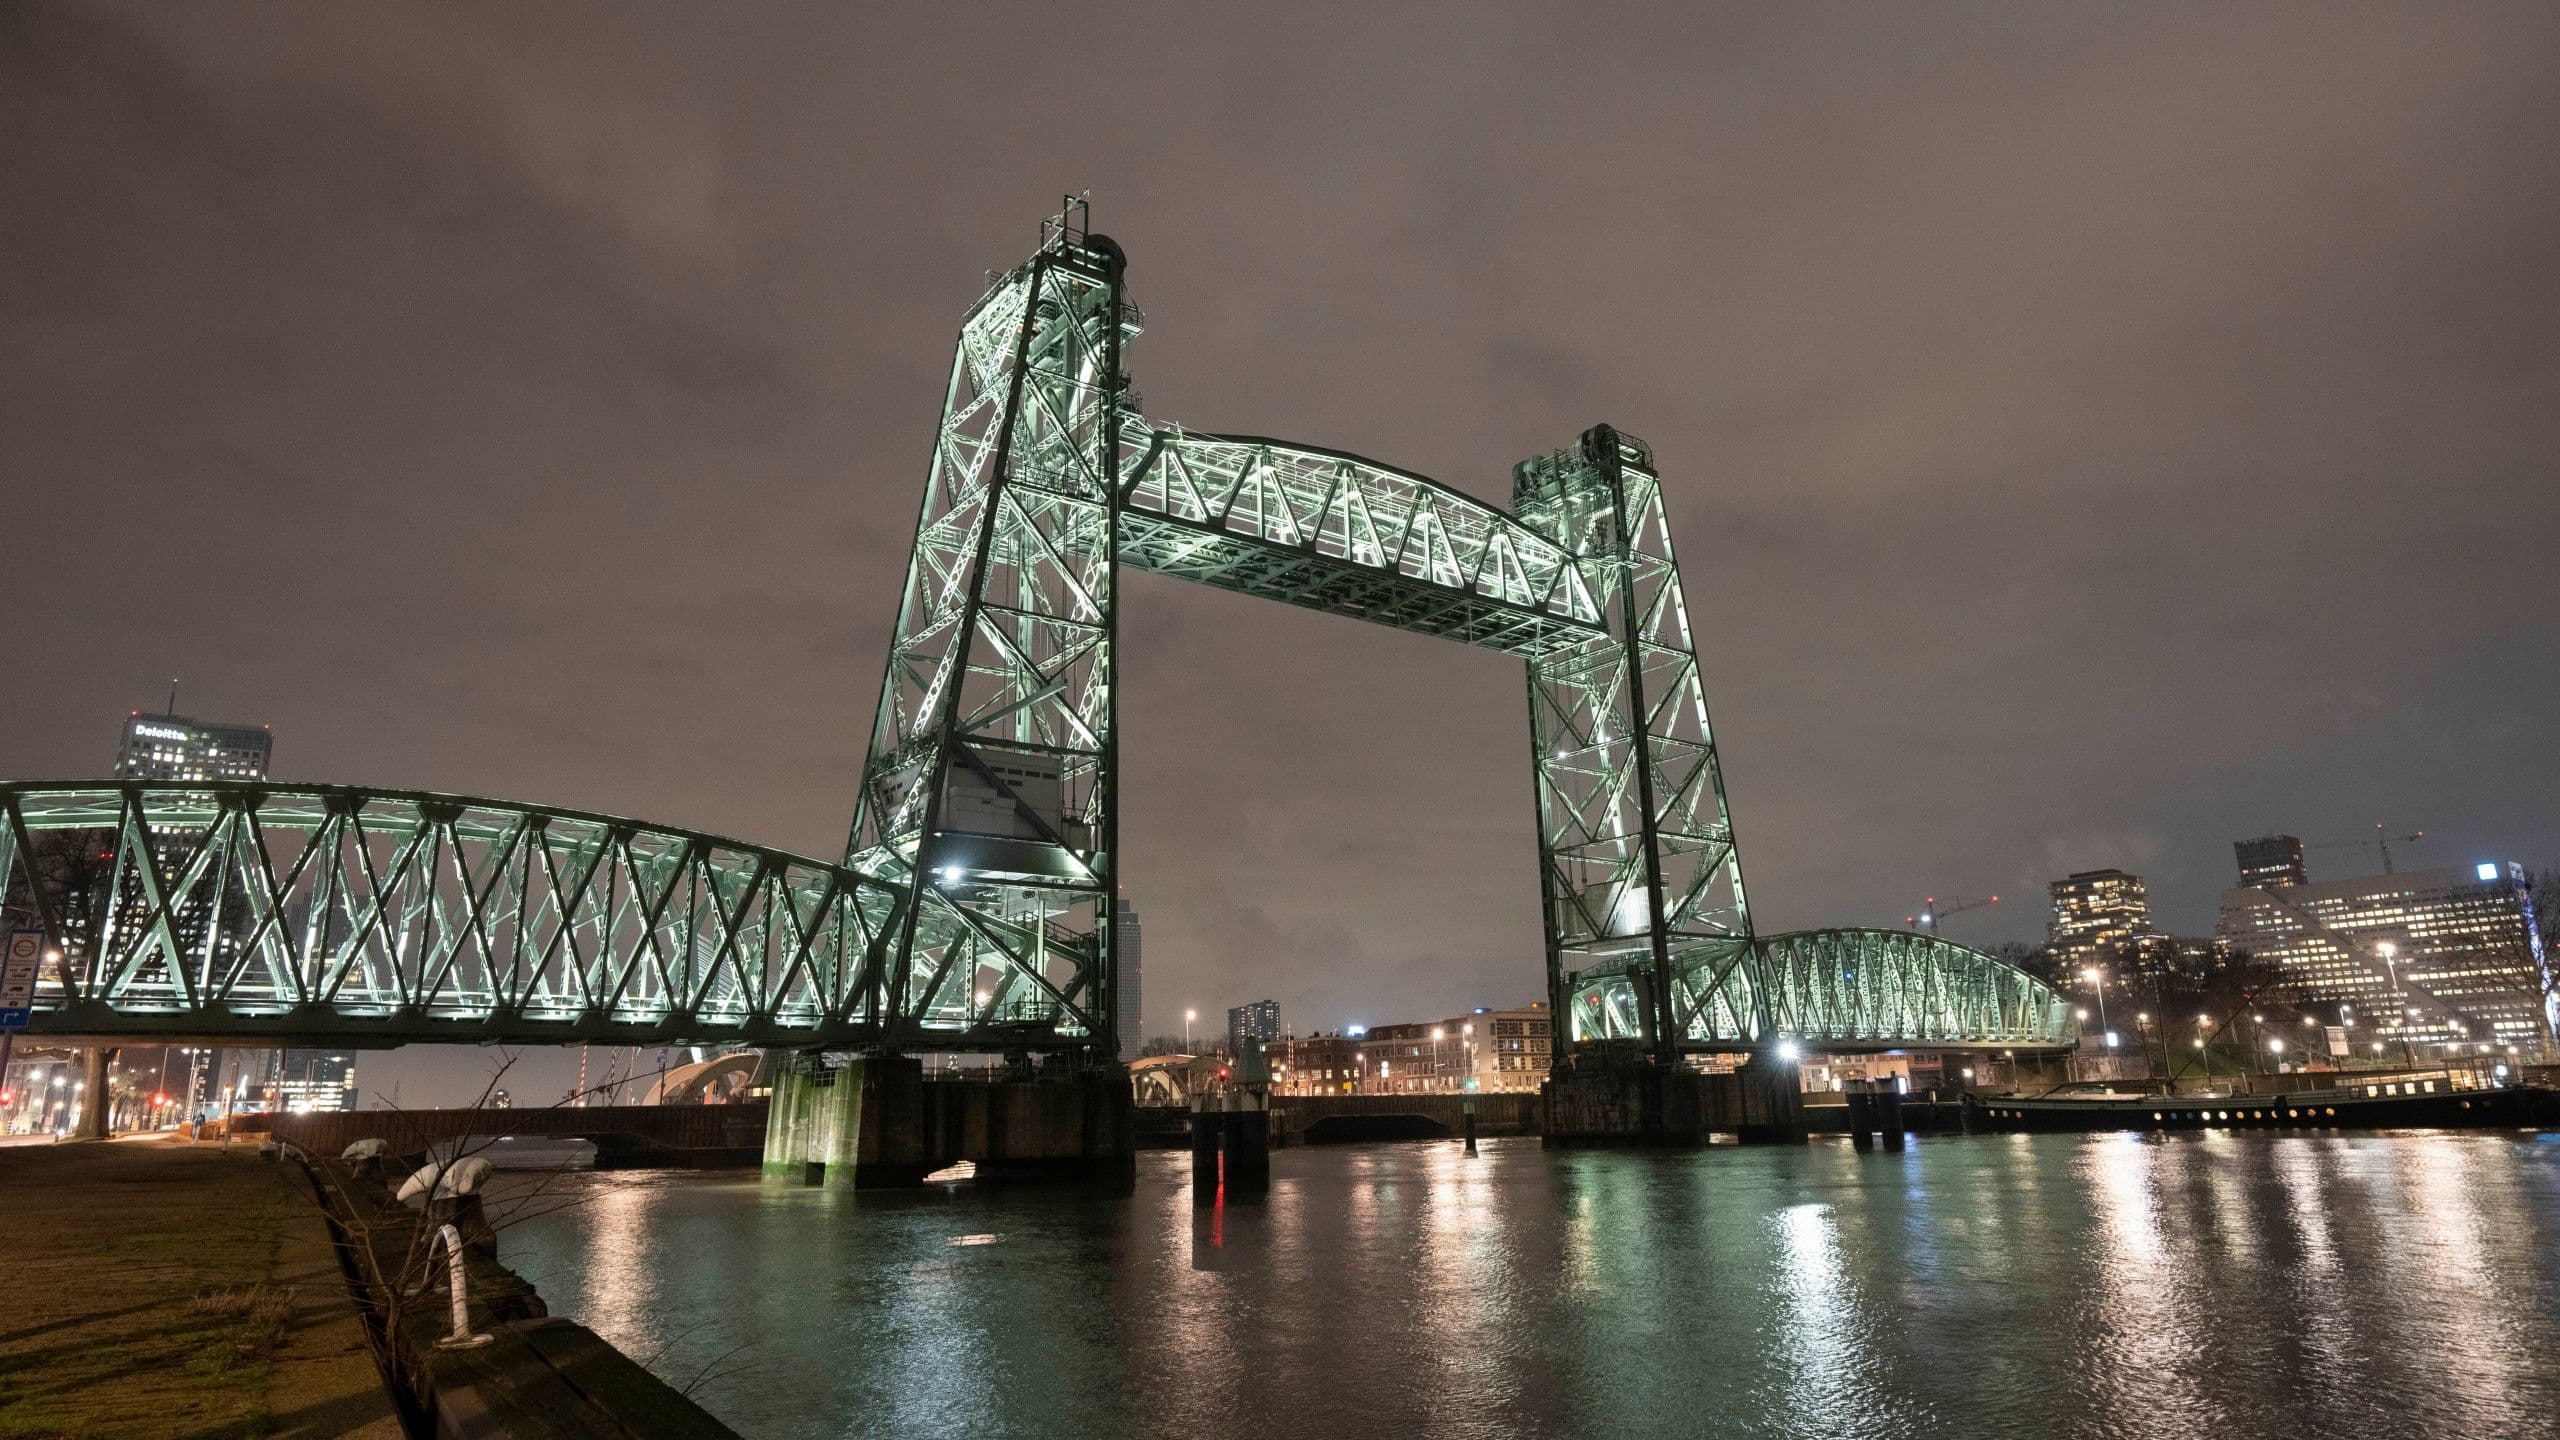 يخت "جيف بيزوس" الجديد هيغير في جسر روتردام التاريخي